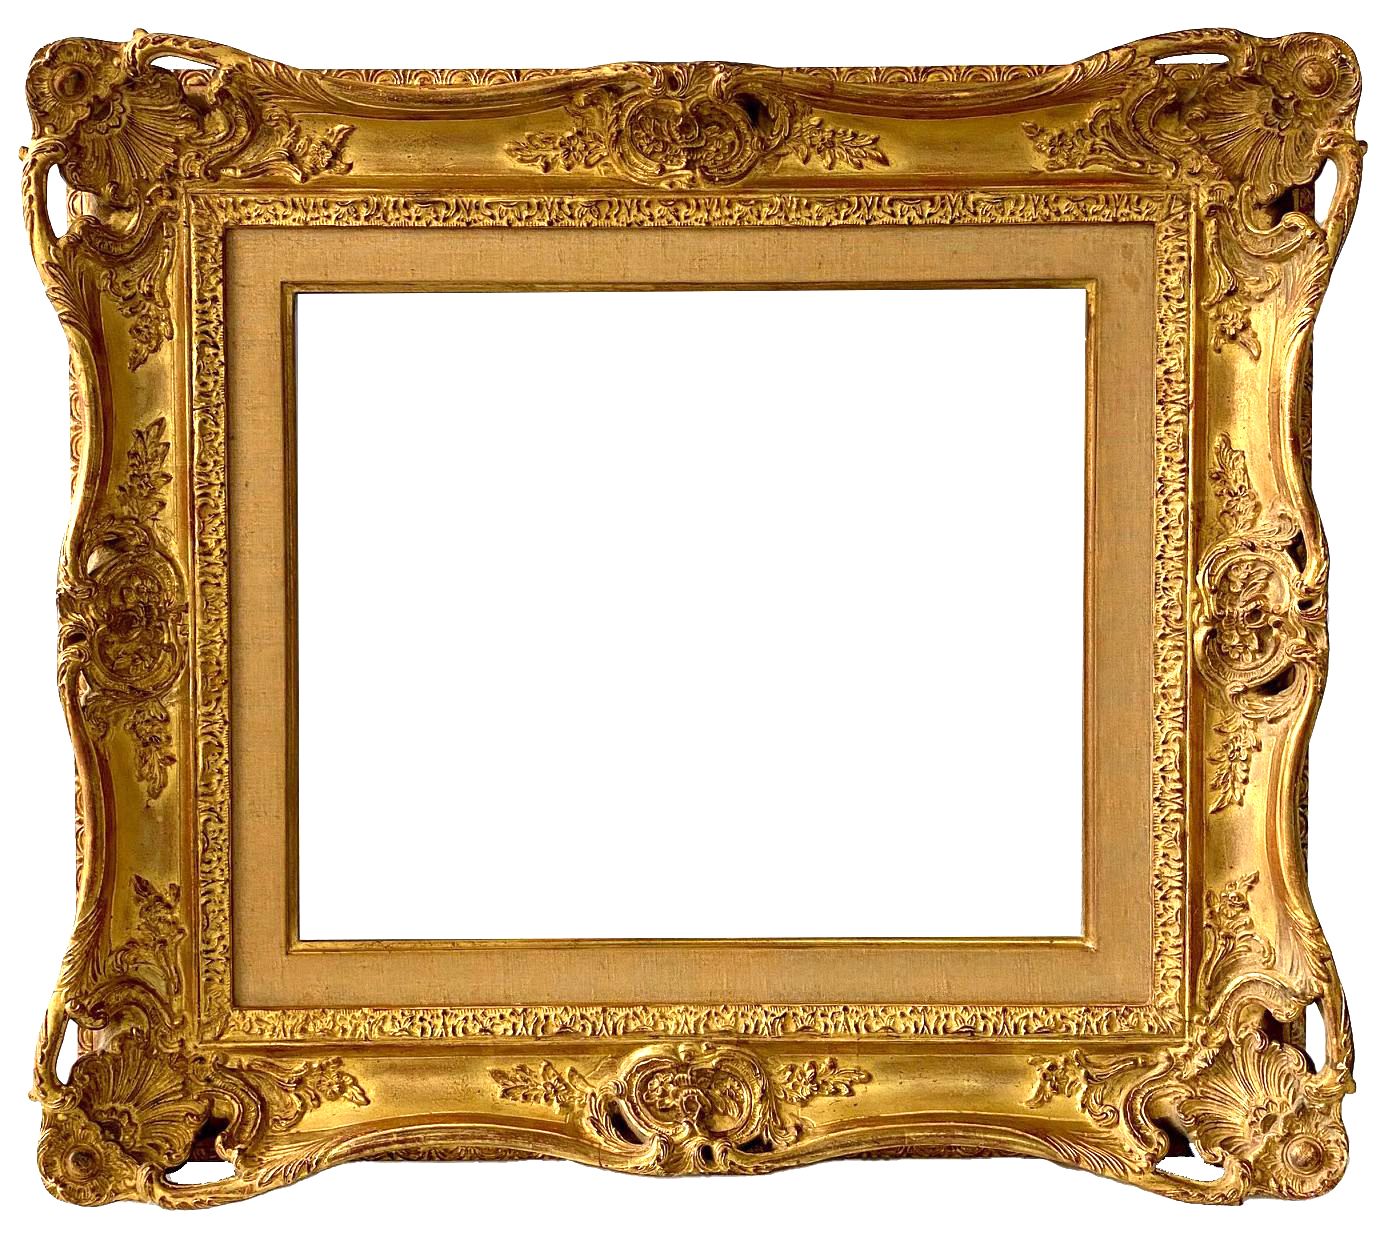 Cadre de style Louis XV - 47,20 x 39,50 - REF - 1355